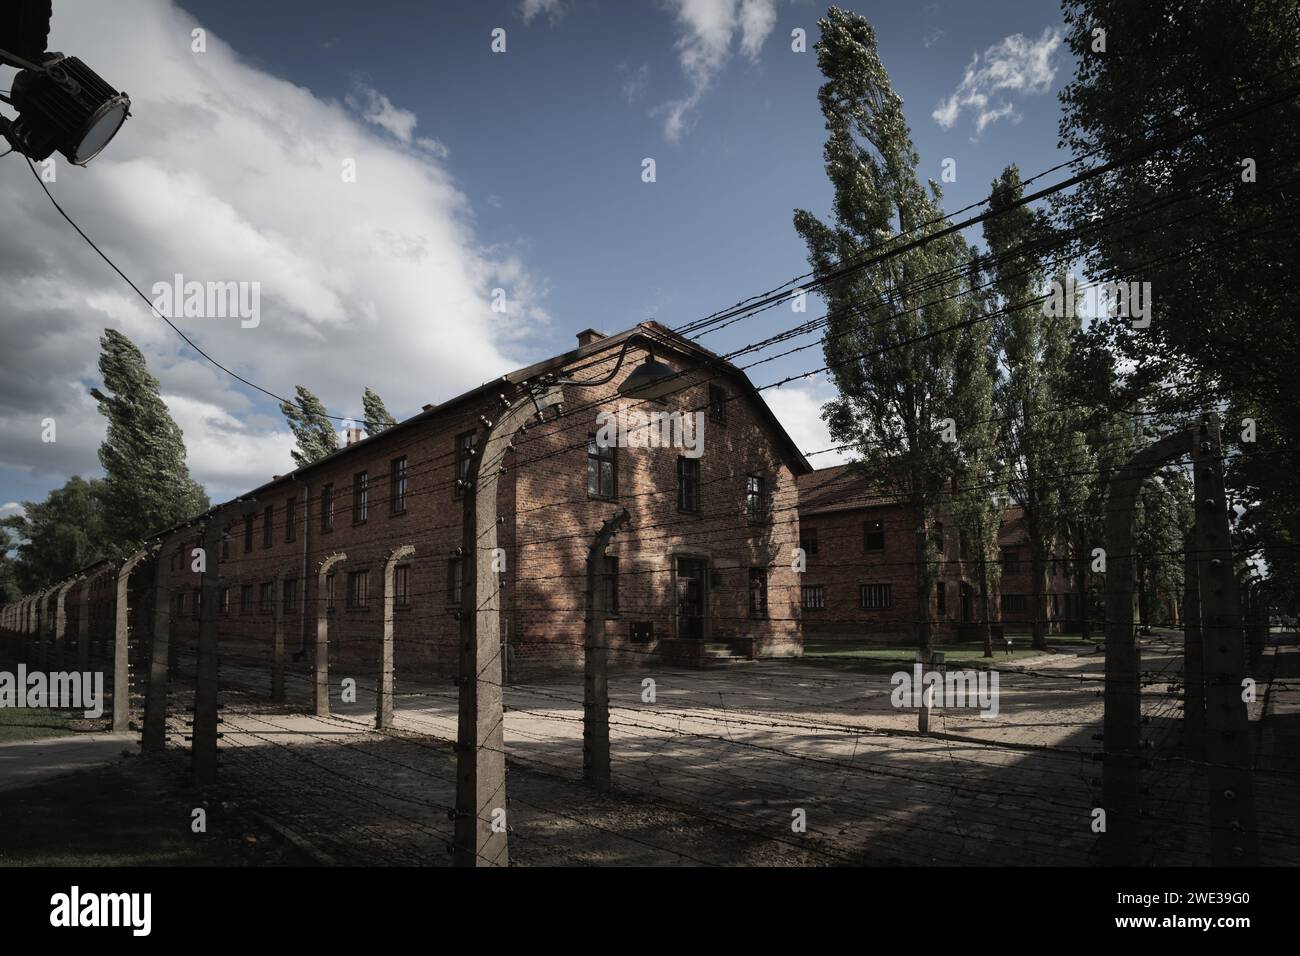 Caserne dans le camp d'extermination d'Auschwitz pendant la Seconde Guerre mondiale. Photo de haute qualité Banque D'Images